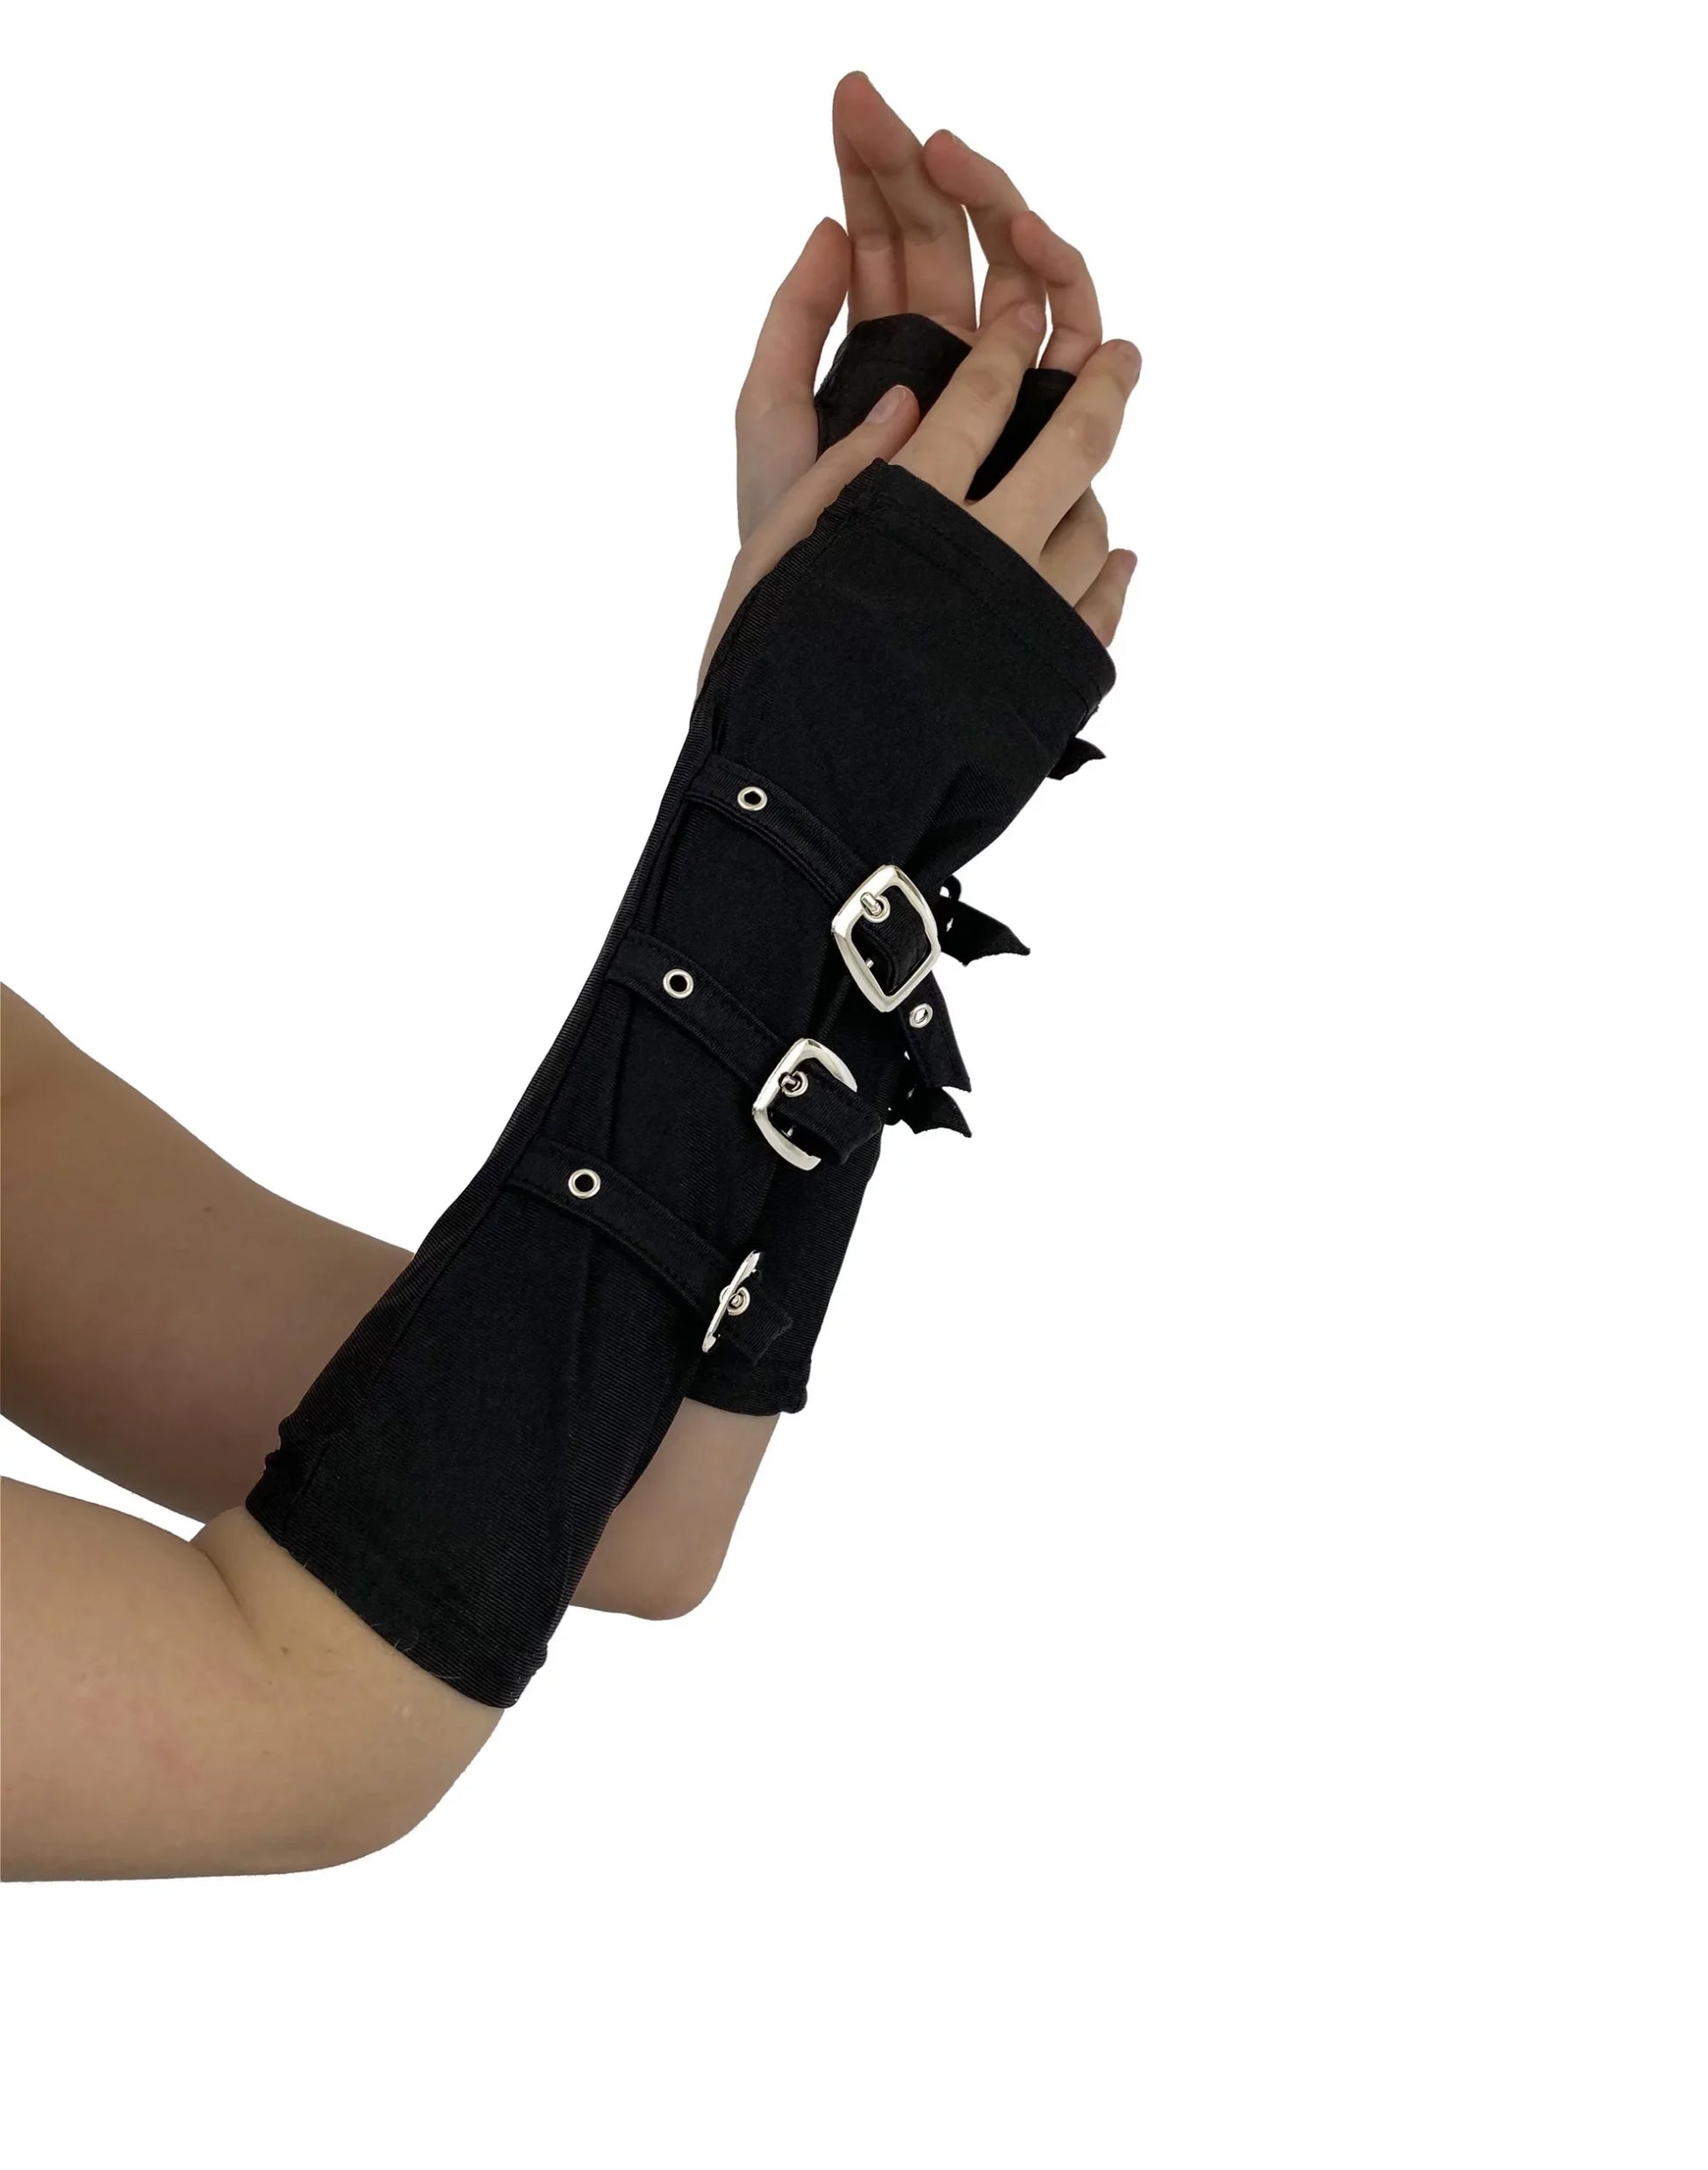 Schwarze Armstulpen Buckle Gloves Black mit silbernen Schnallen von Pamela Mann